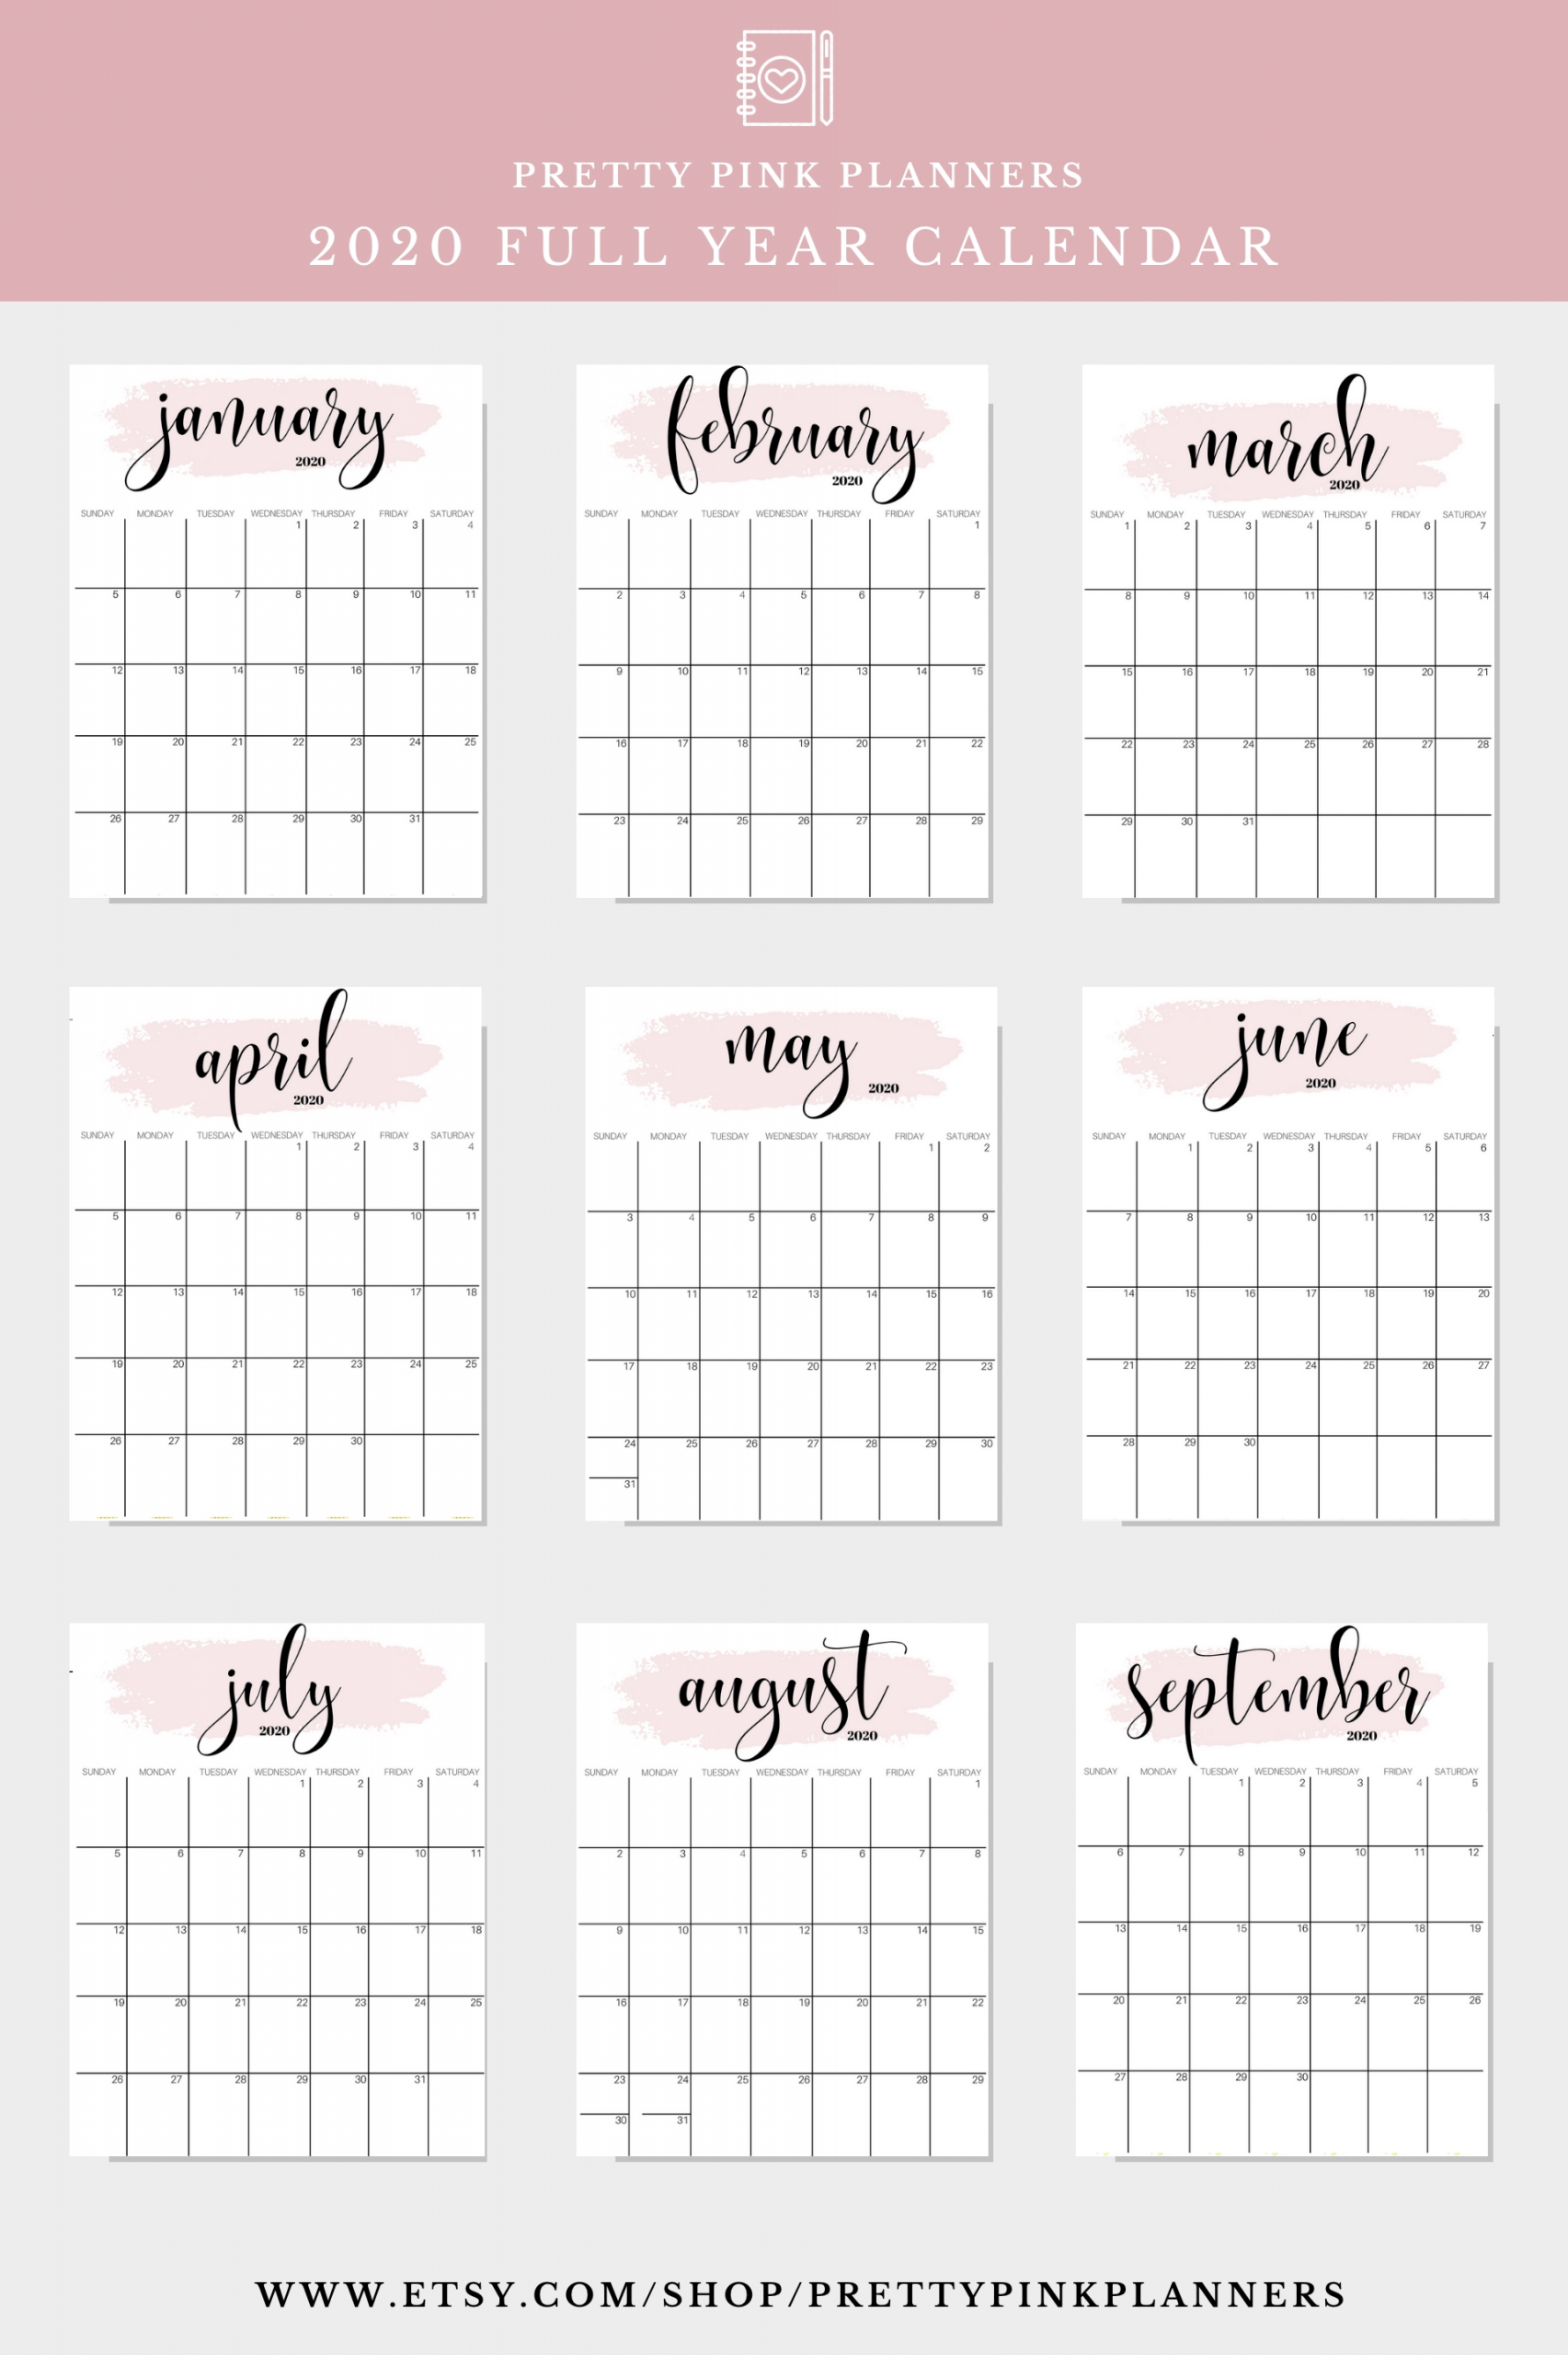 Get 2021 September Calendar Hello Kitty Inspired